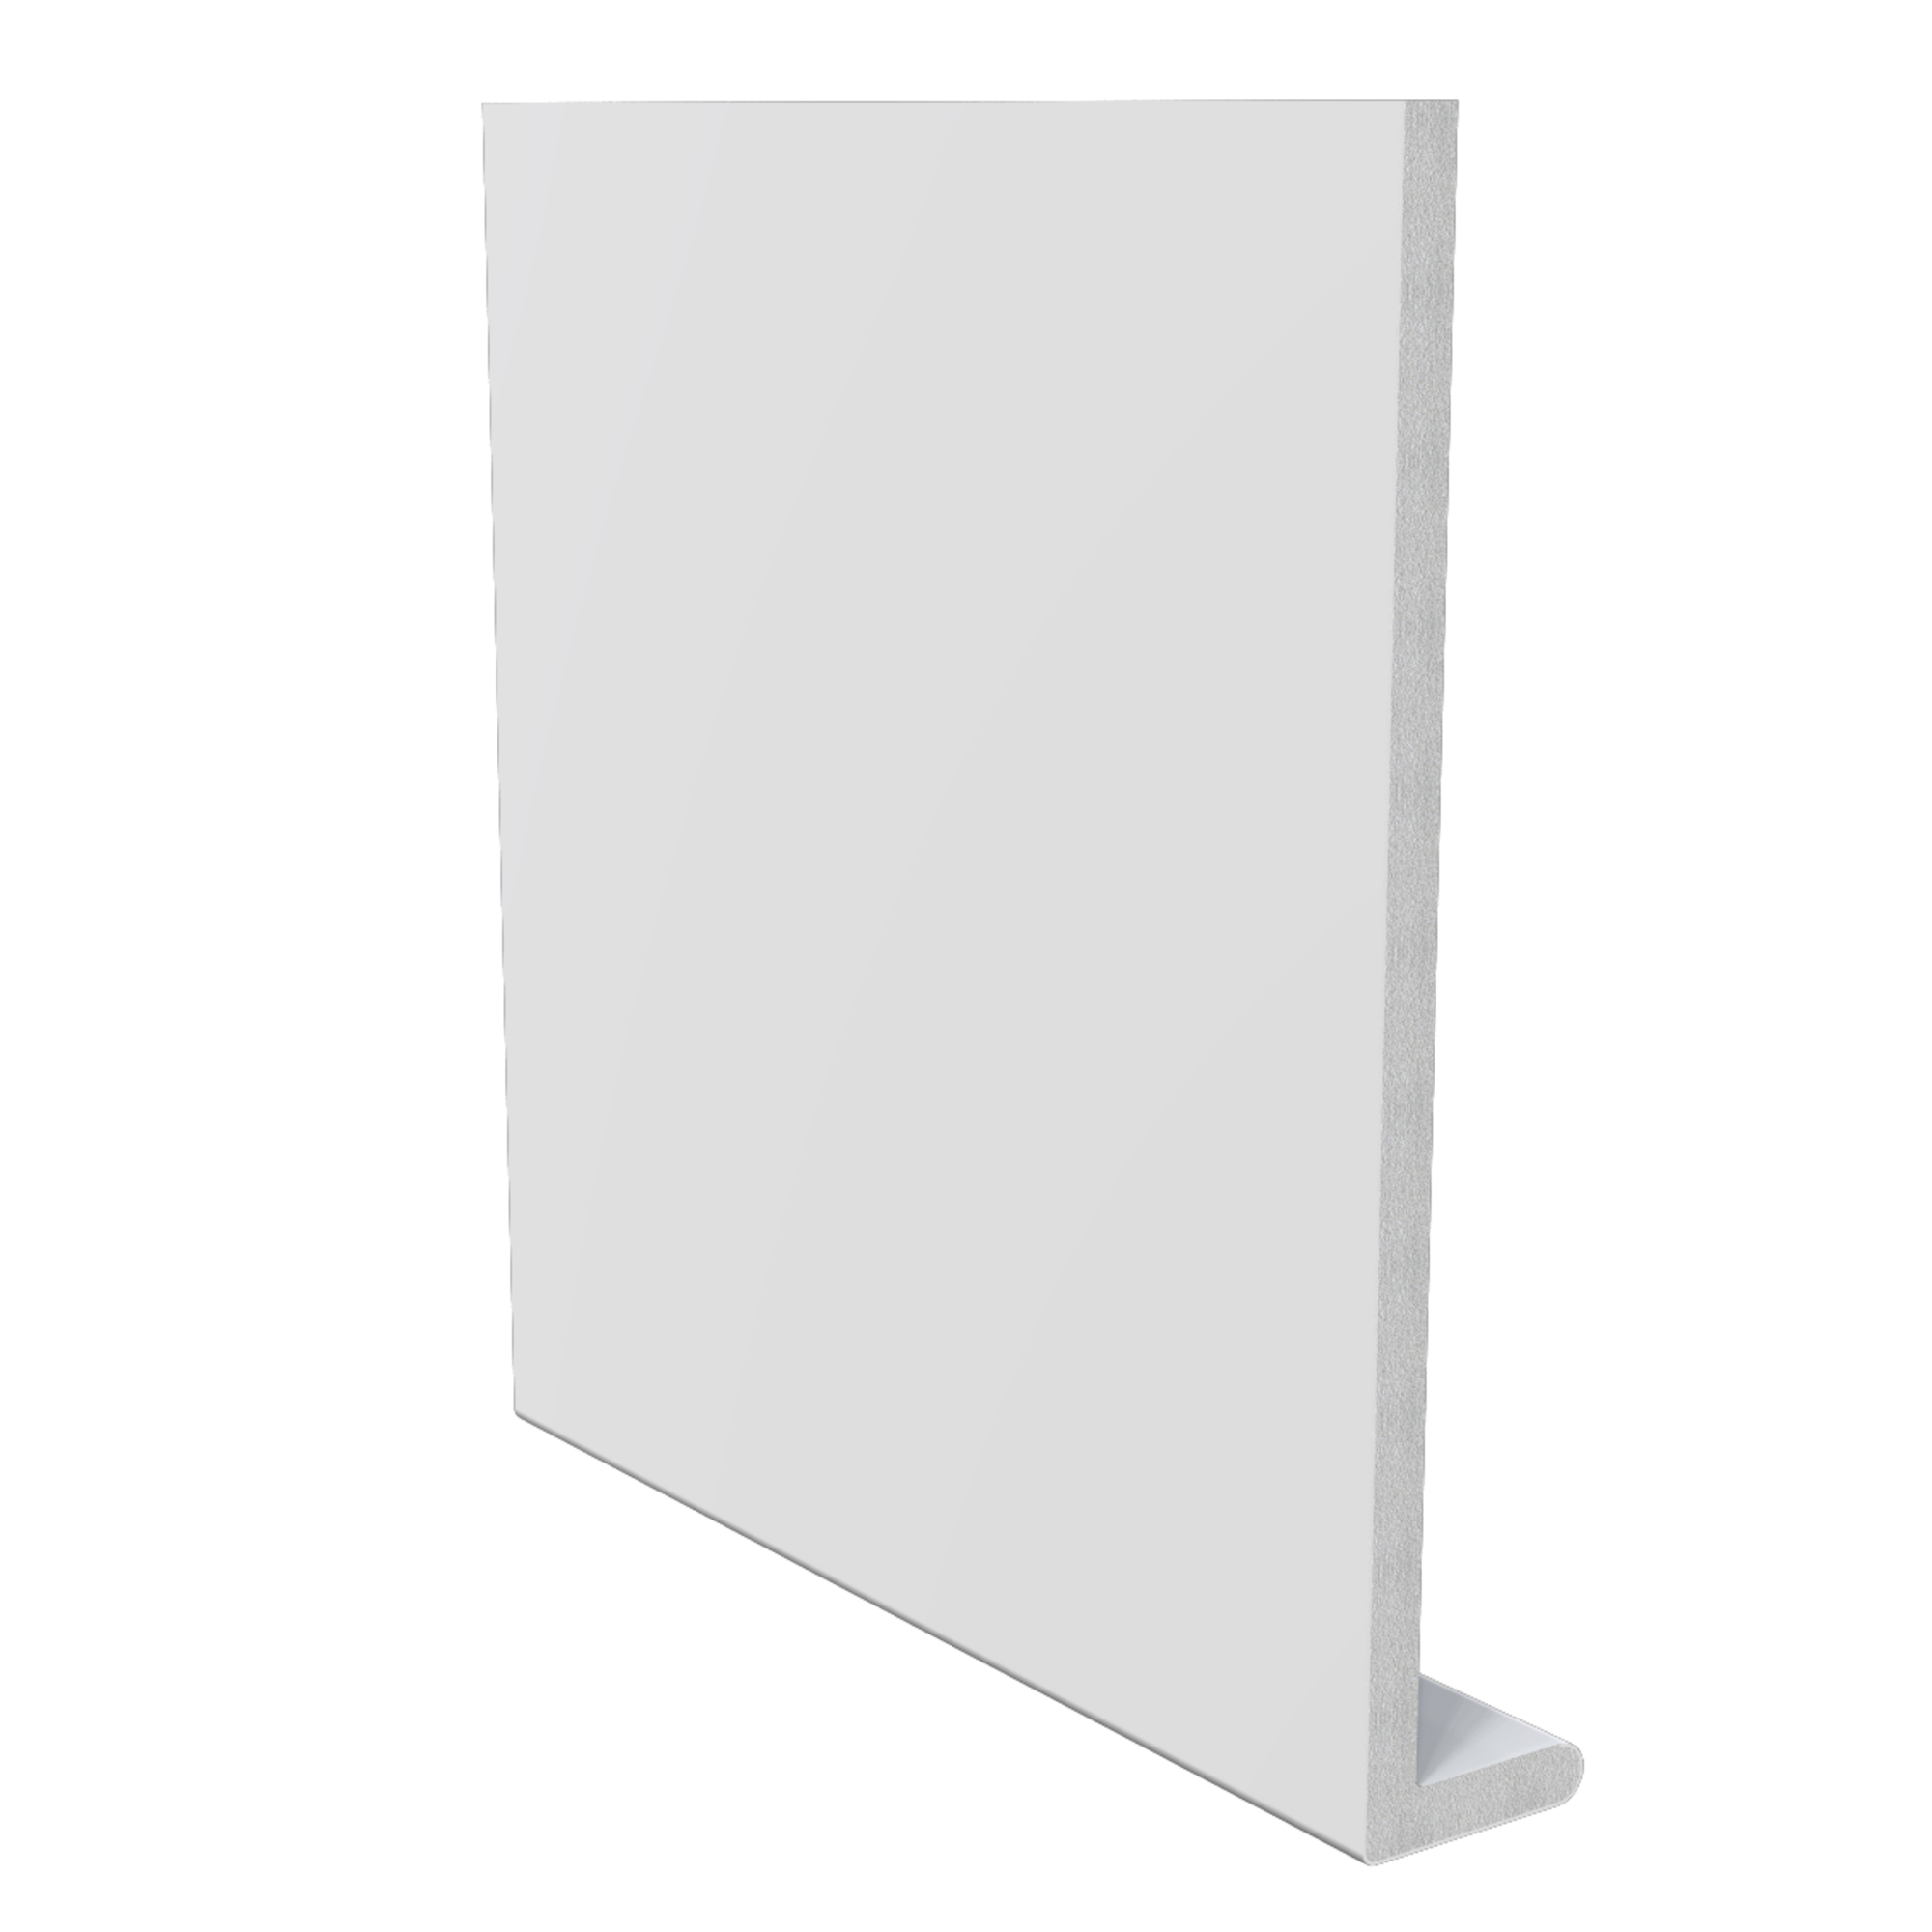 Panel frontal cuadrado de 300 x 22,5 cm x 8 mm blanca